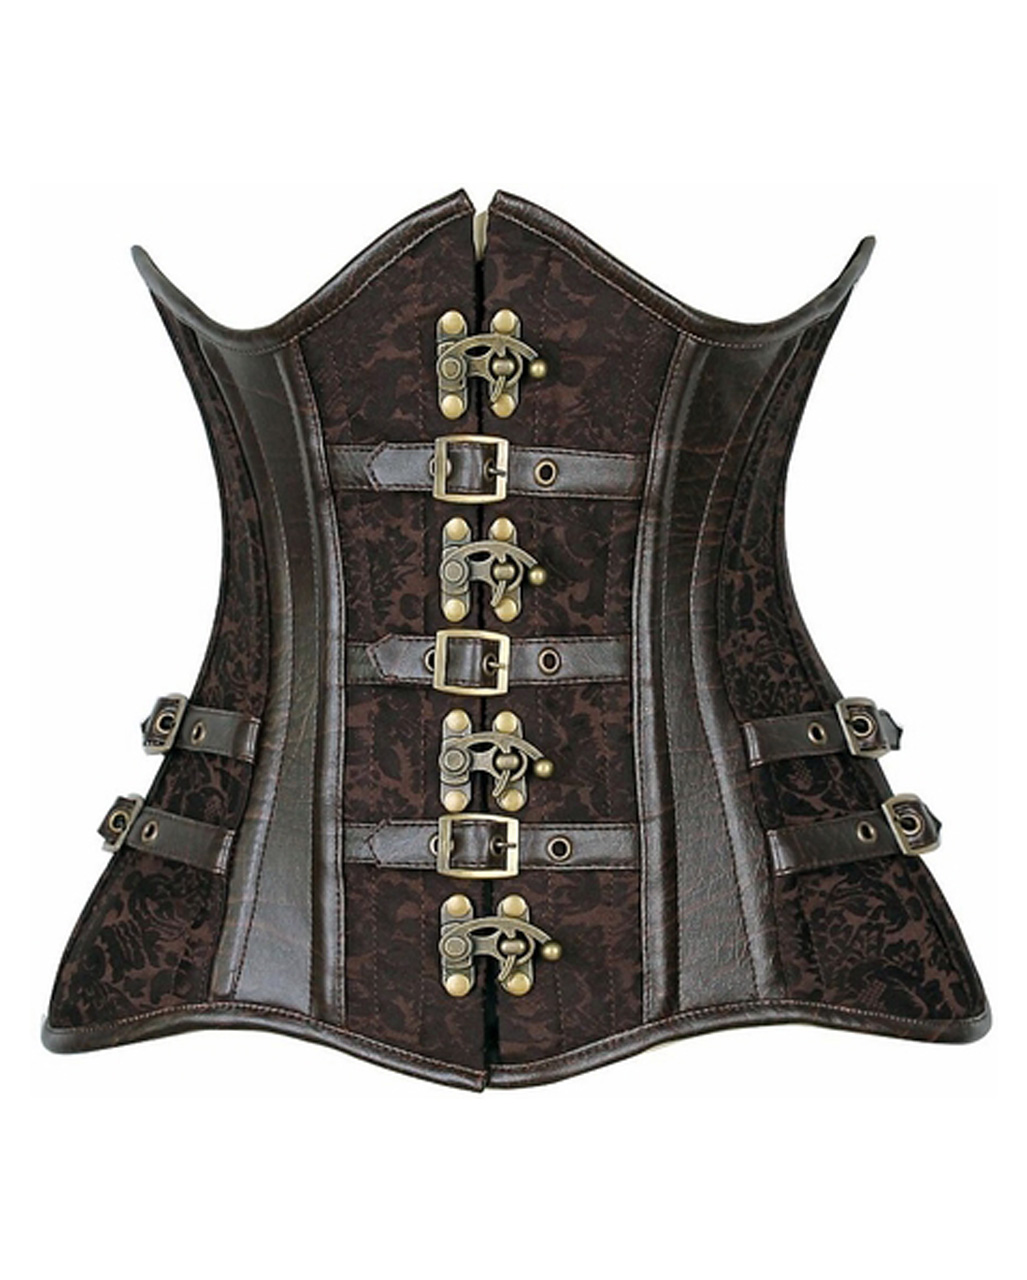 https://inst-2.cdn.shockers.de/hs_cdn/out/pictures/master/product/1/unterbrustkorsett-steampunk-braun-steampunk-korsett-kunsleder-korsett-steampung-underbust-corset-38482.jpg